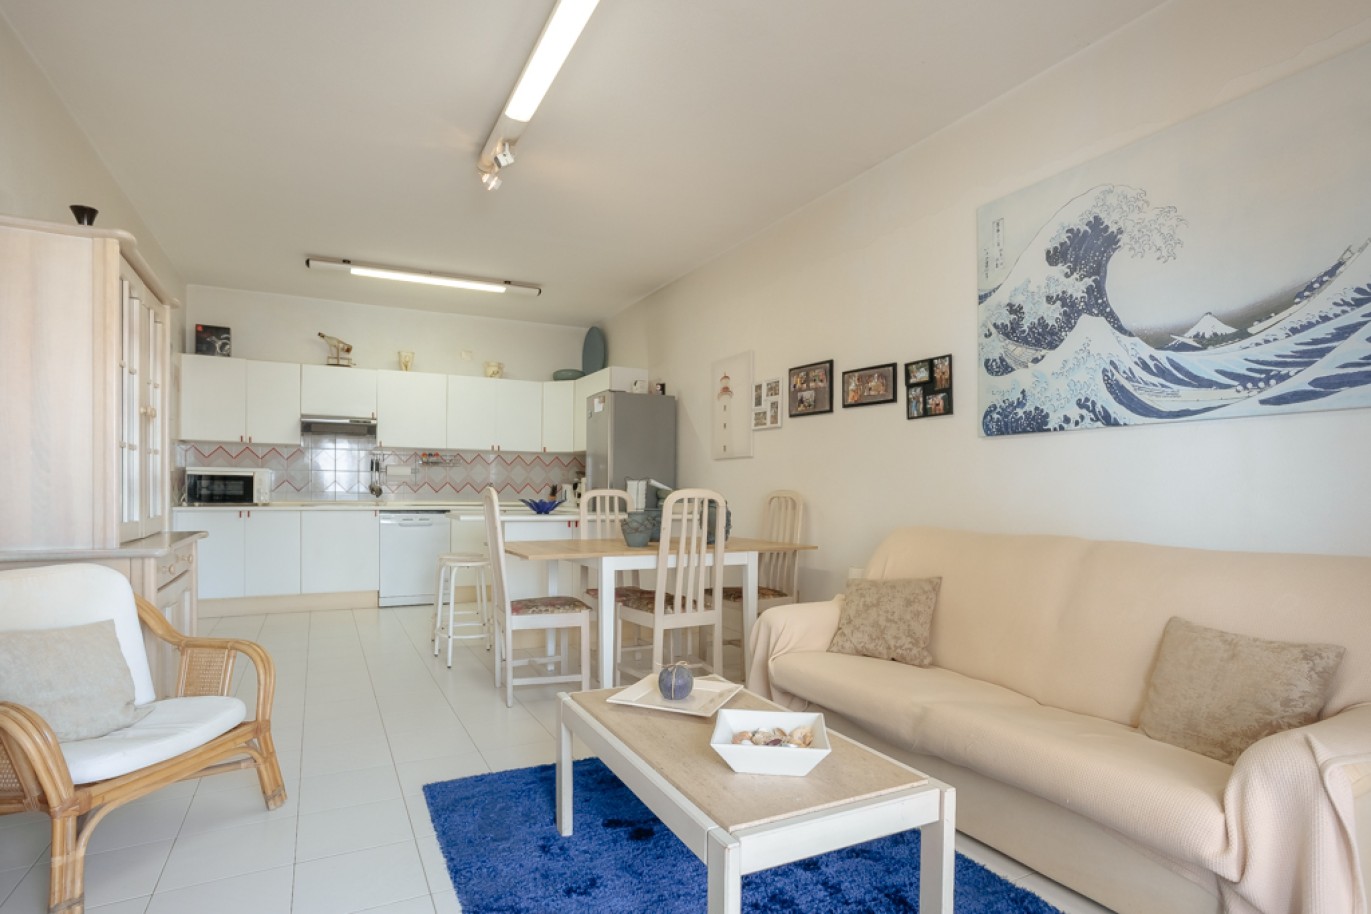 Apartamento com 1+1 quartos, com vista mar, para venda em Porches, Algarve_257022